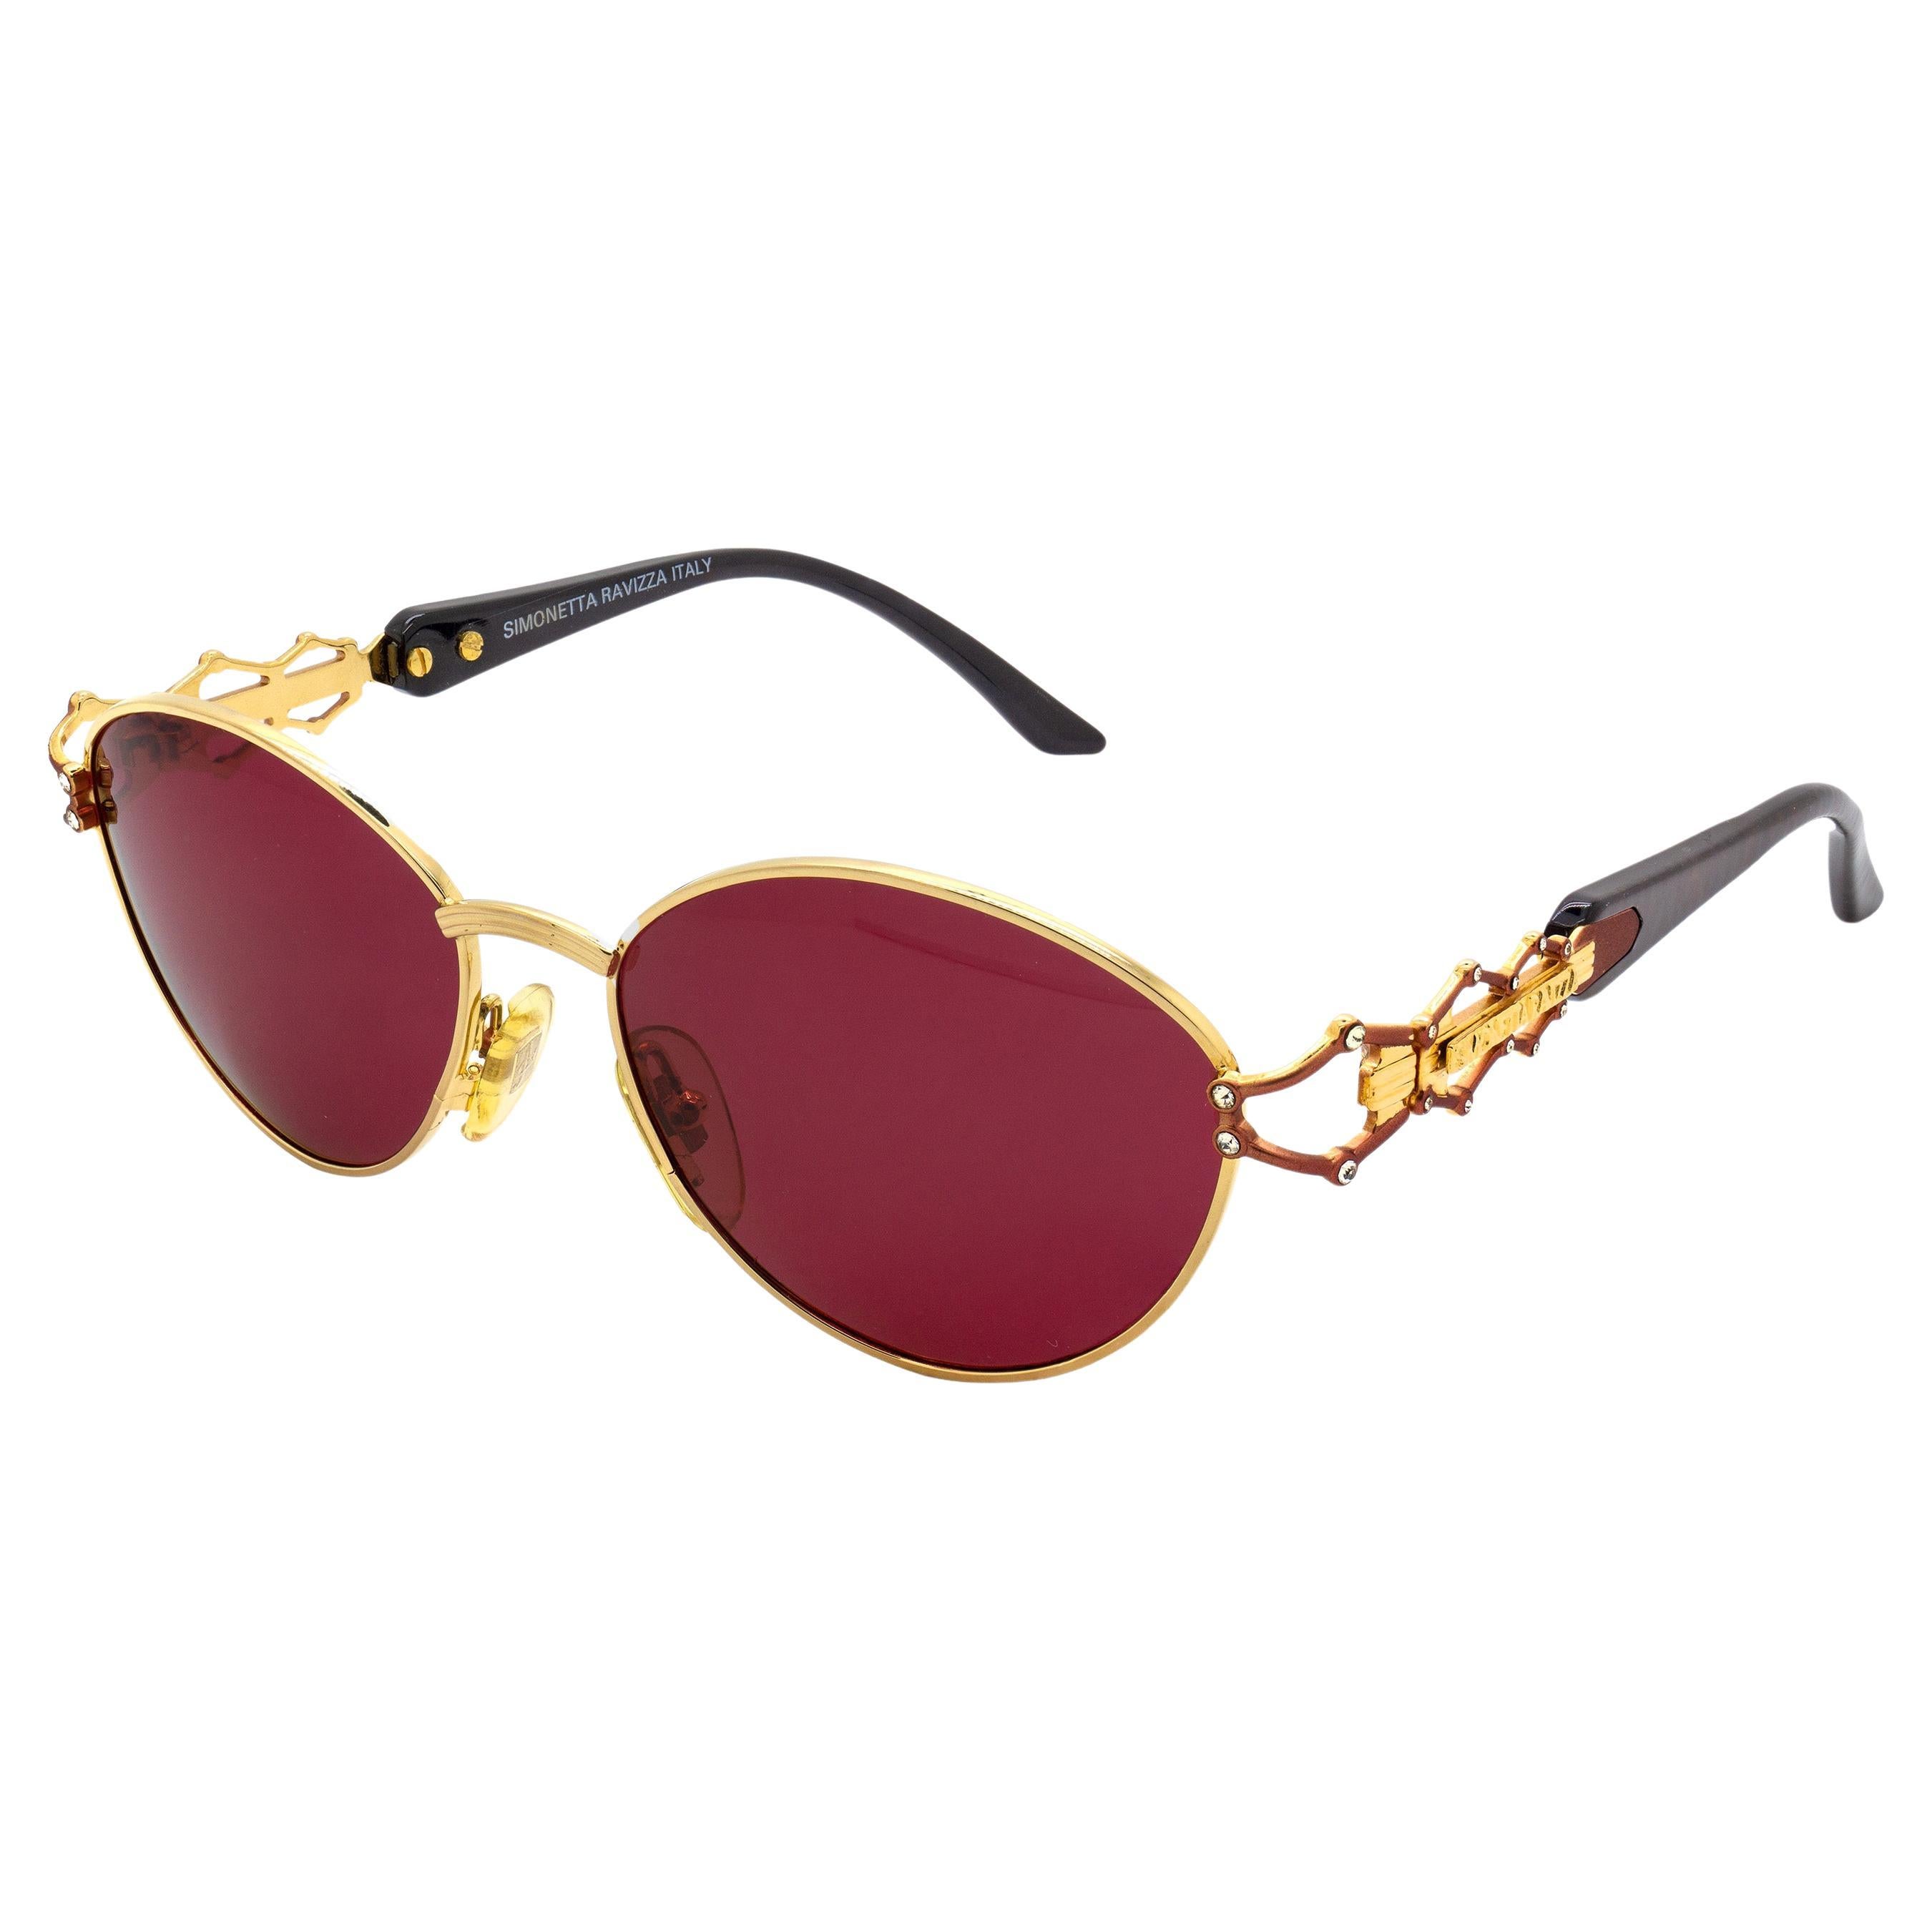 Simonetta Ravizza jewelry vintage sunglasses For Sale